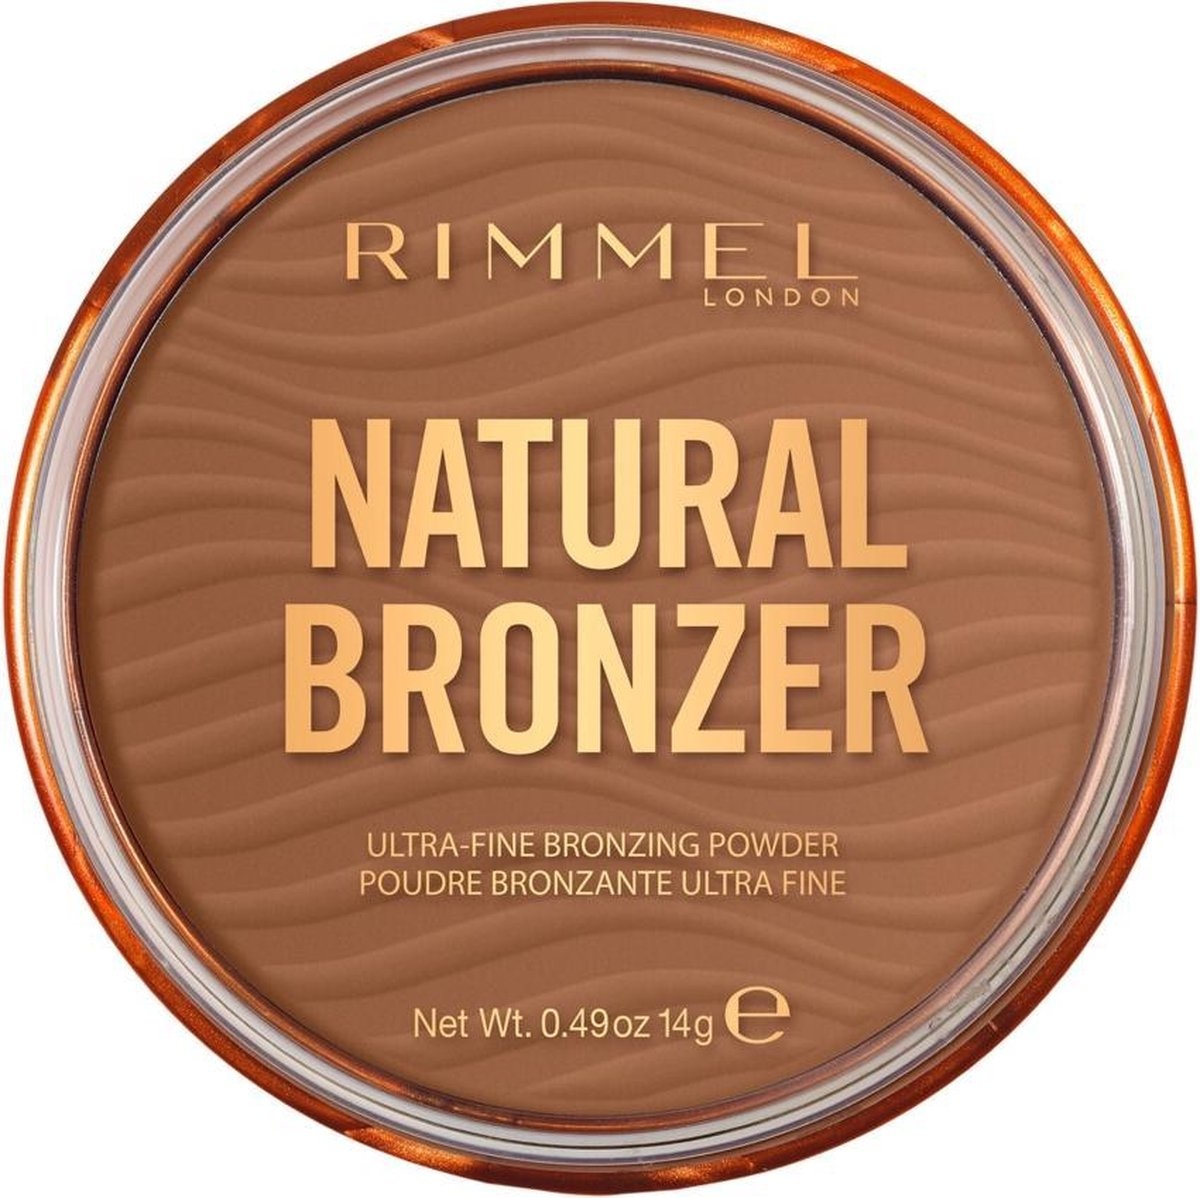 Rimmel London Natural Bronzer Ultra-Fine Rimmel London Natural Bronzer Poudre bronzante ultra-fine - 002 Sunbronze - Emballage endommagéPoudre - 002 Sunbronze - Copie